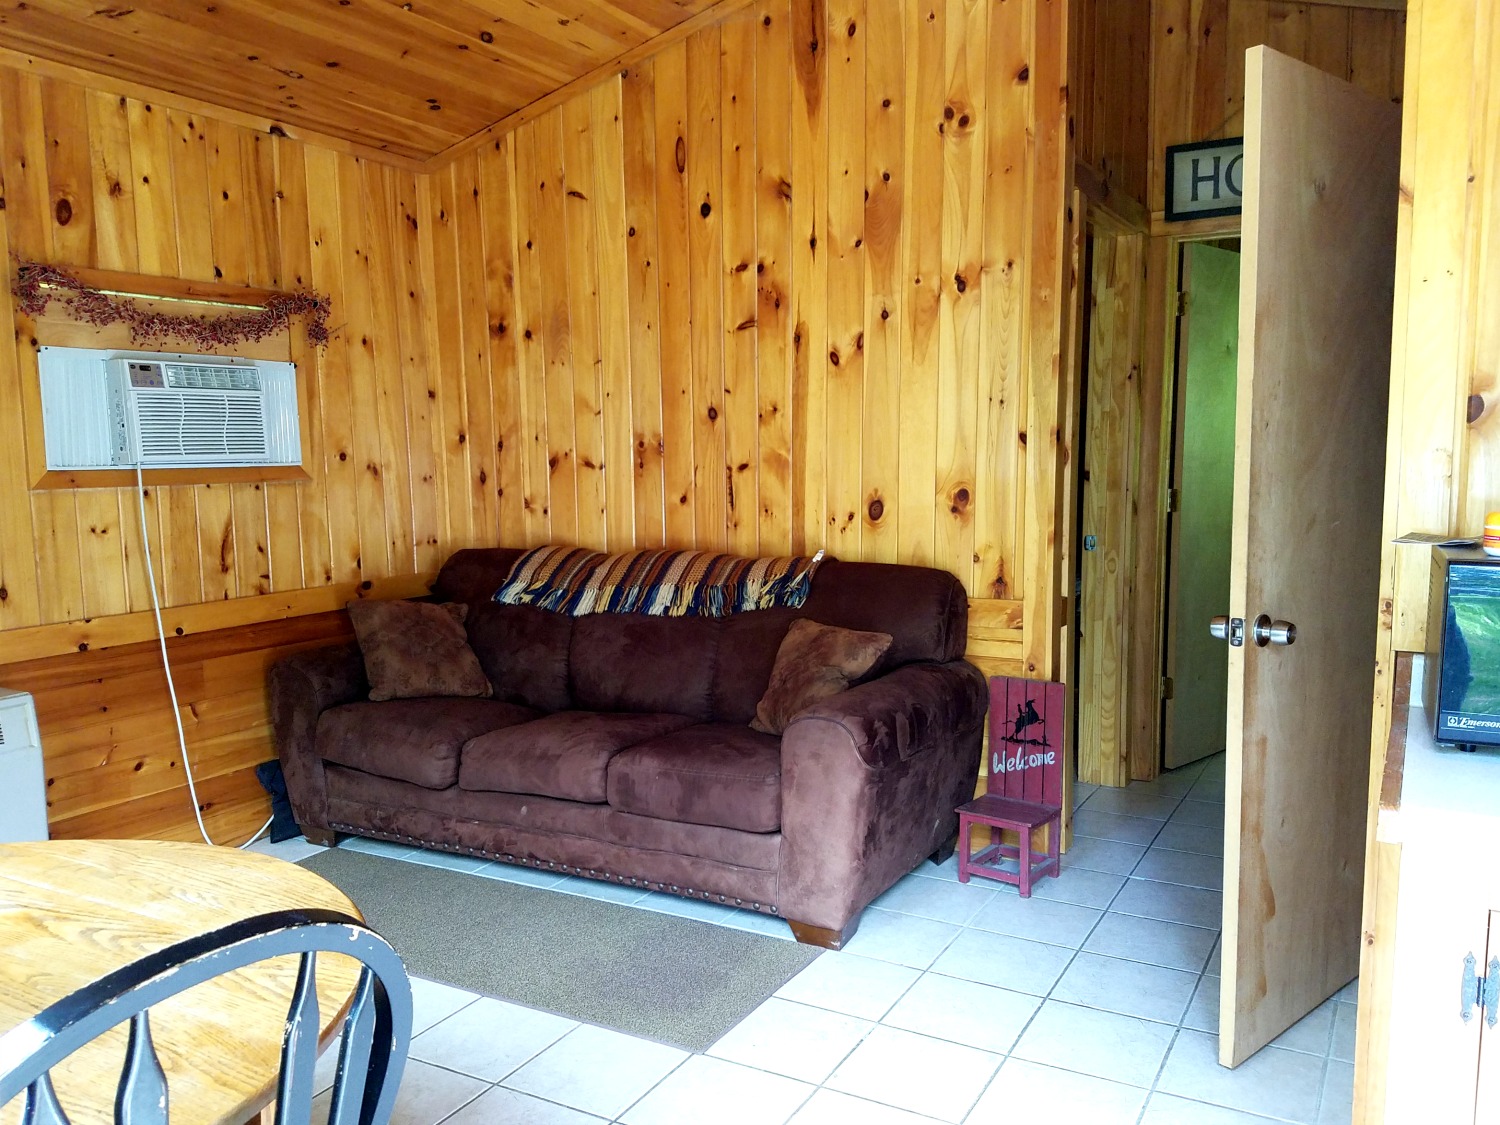 Maine cabin